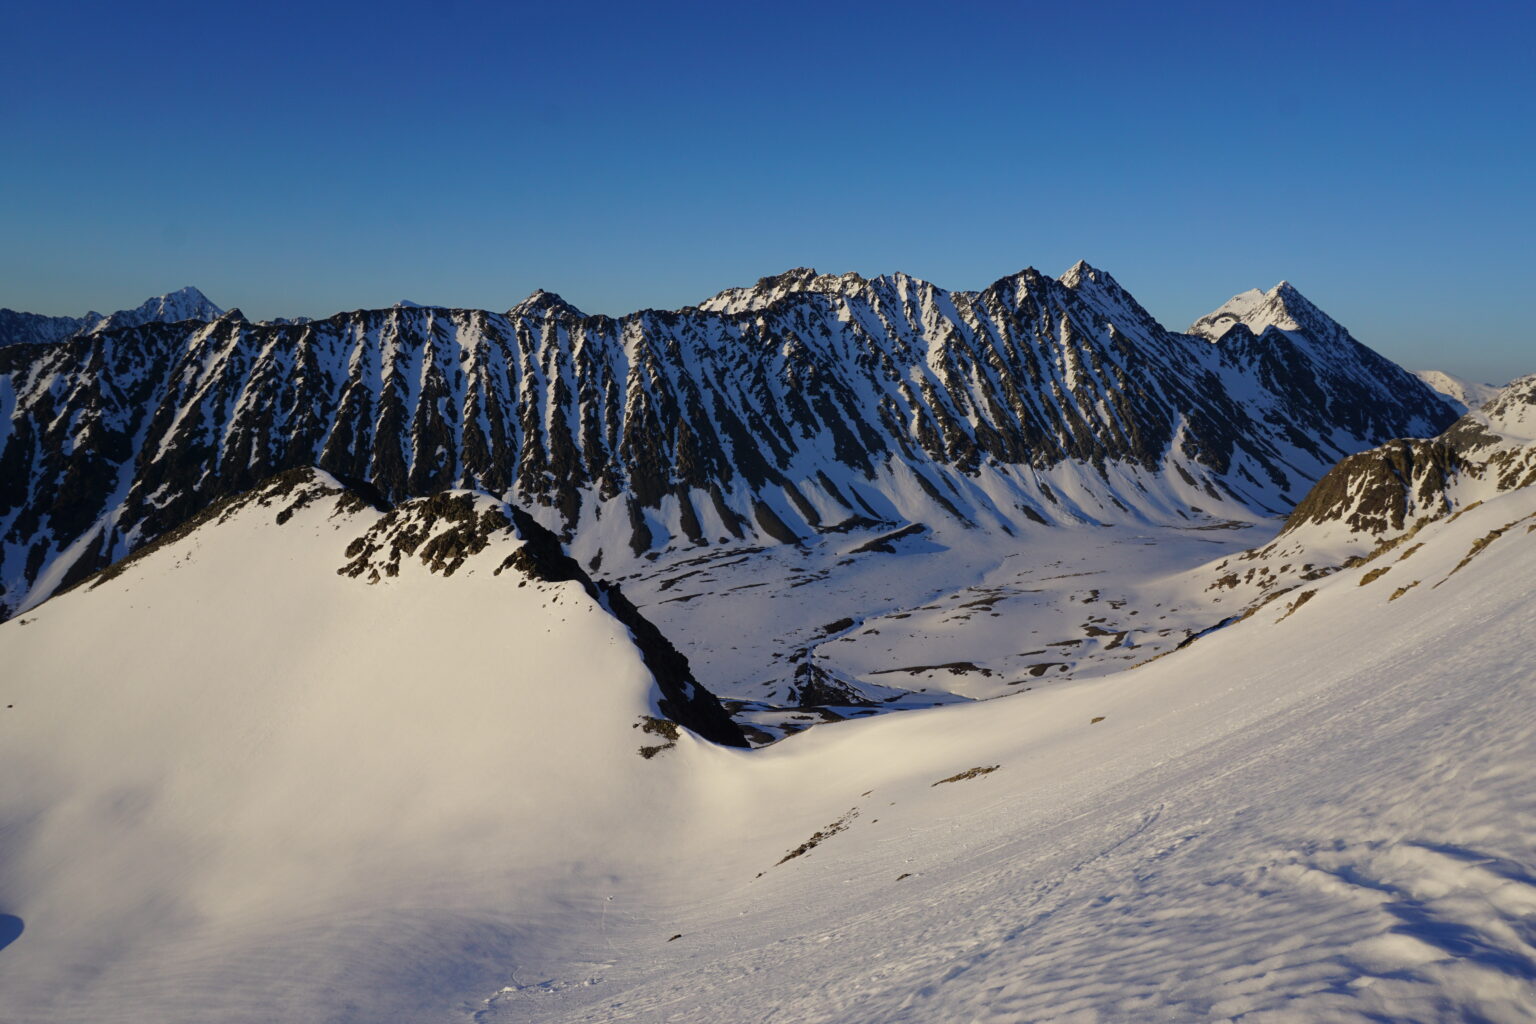 Endless amount of ski terrain in the Lyngen Alps